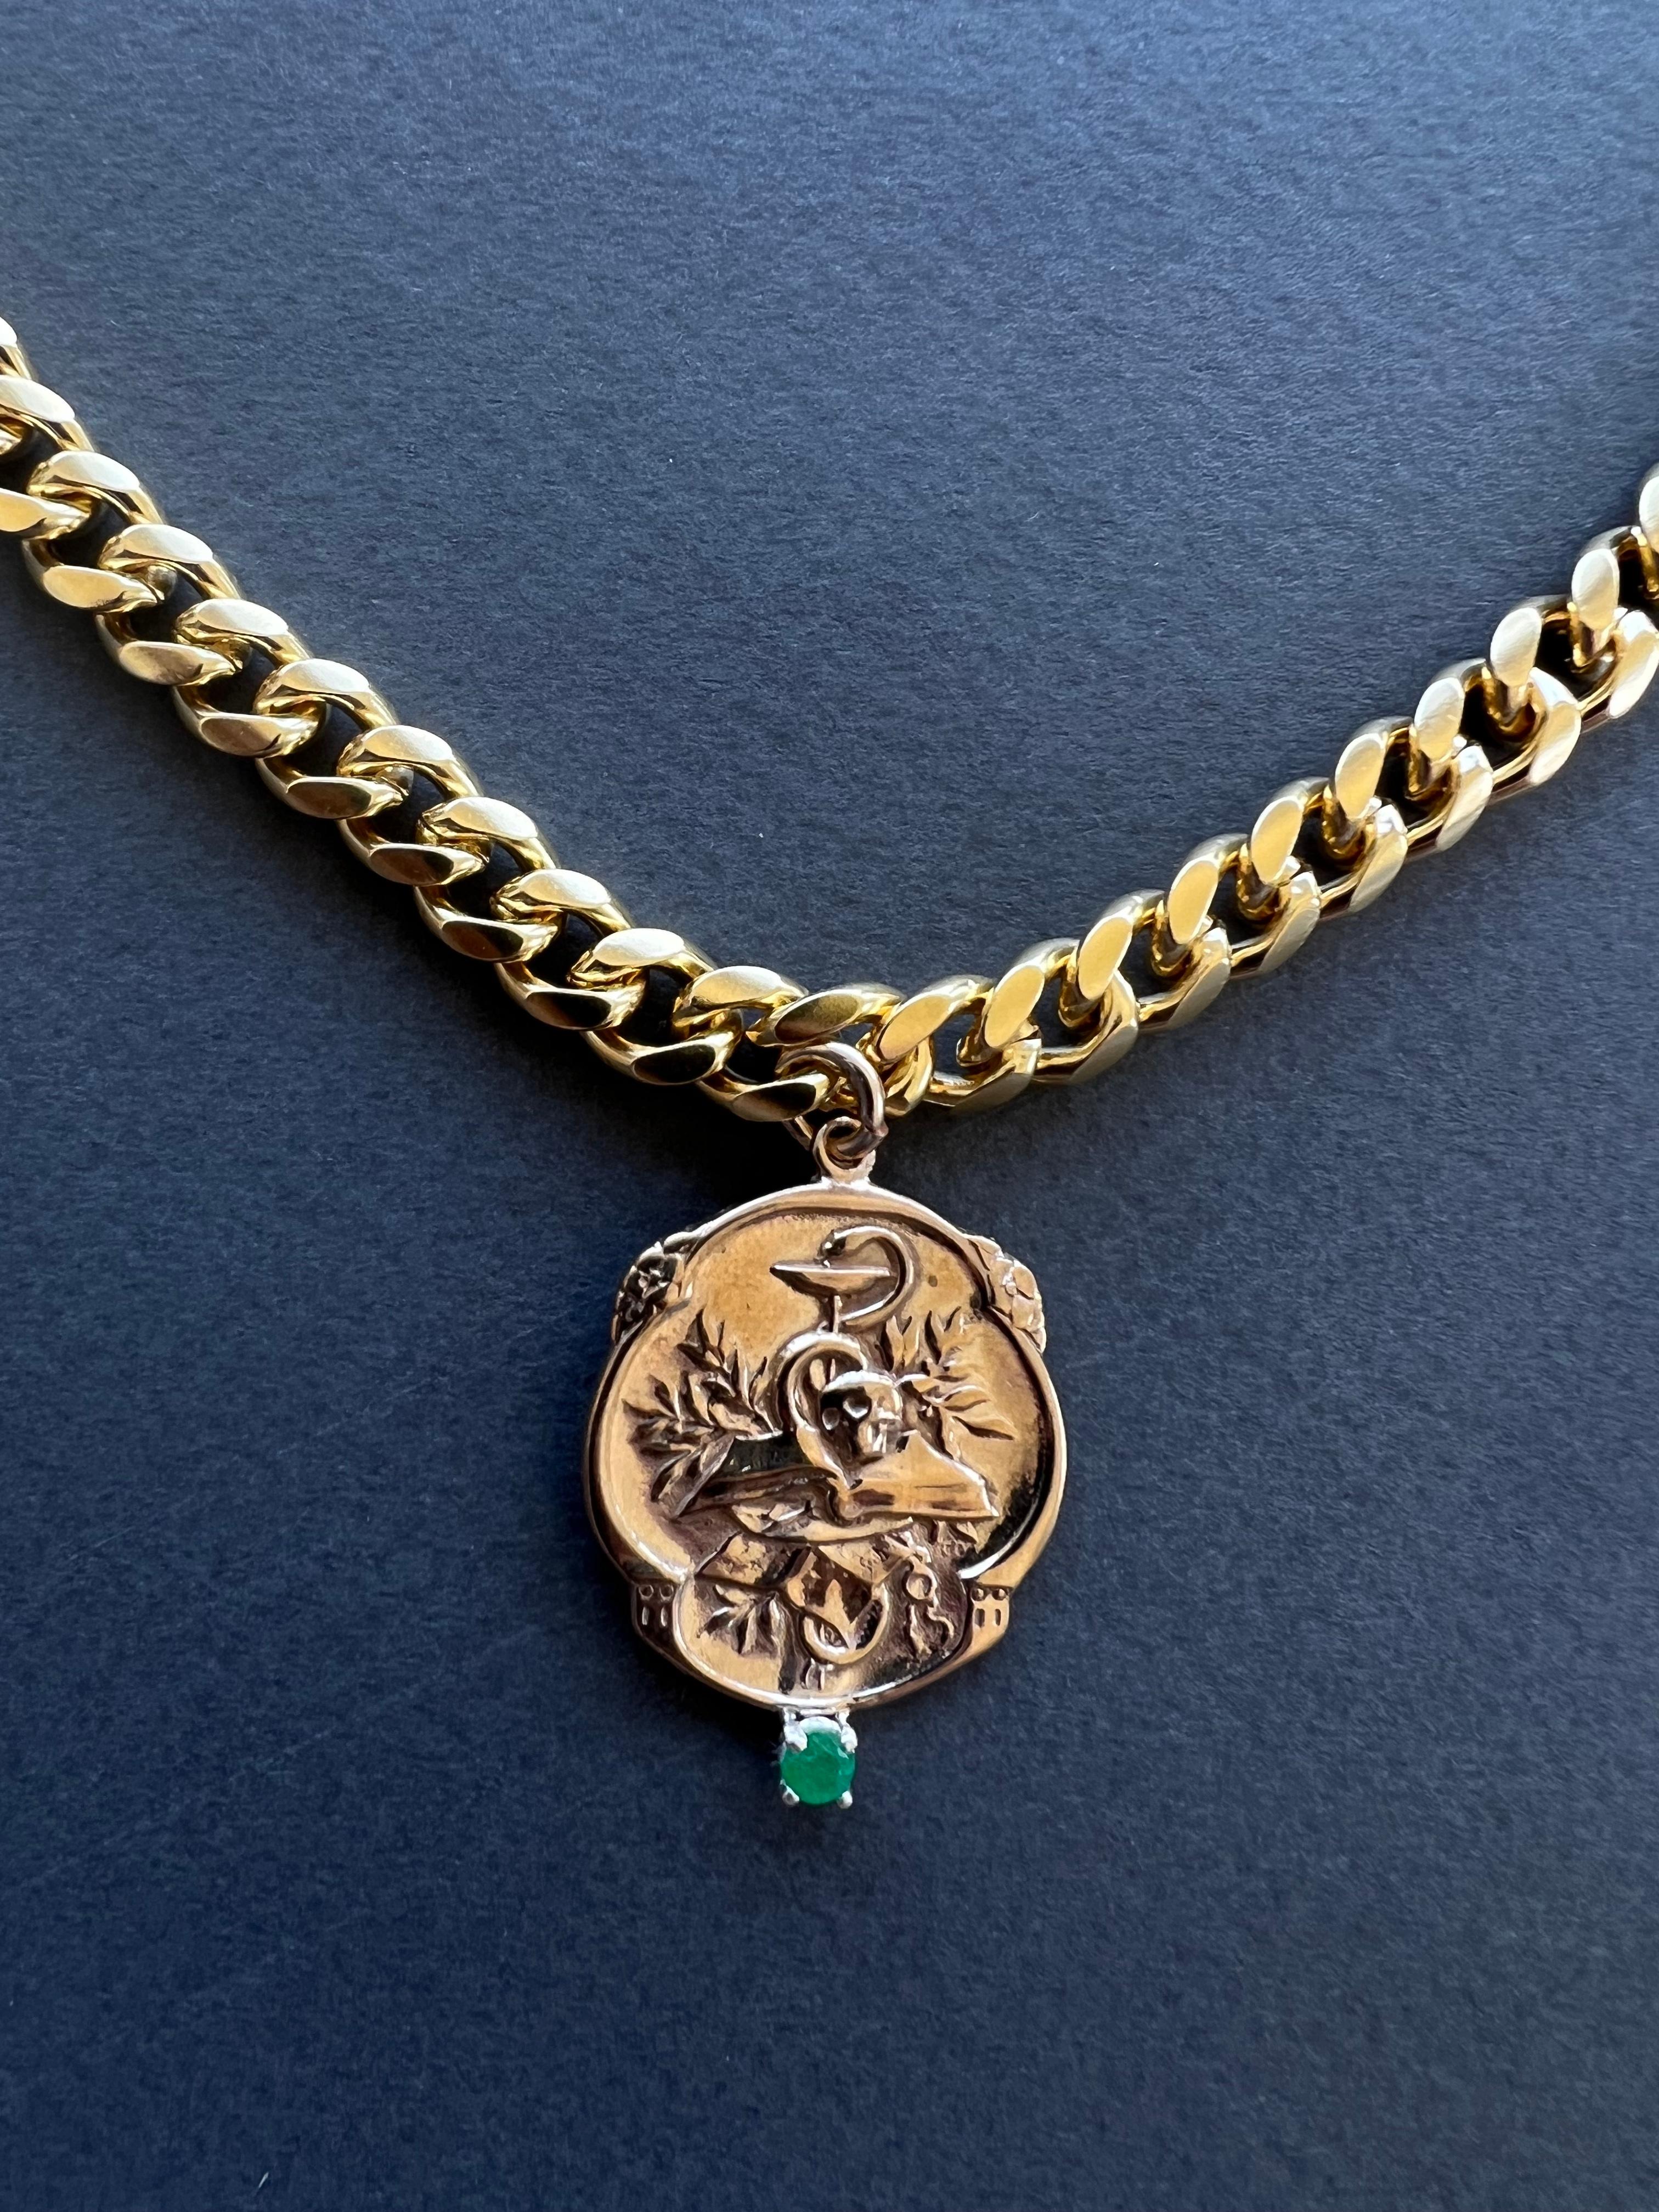 Smaragd-Halskette im viktorianischen Stil Memento Mori Medaille Choker Kette Schädel J Dauphin
Vergoldete Messingkette und Bronzemedaille

Symbole oder Medaillen können zu einem mächtigen Werkzeug in unserem Arsenal für das Spirituelle werden. 
Seit